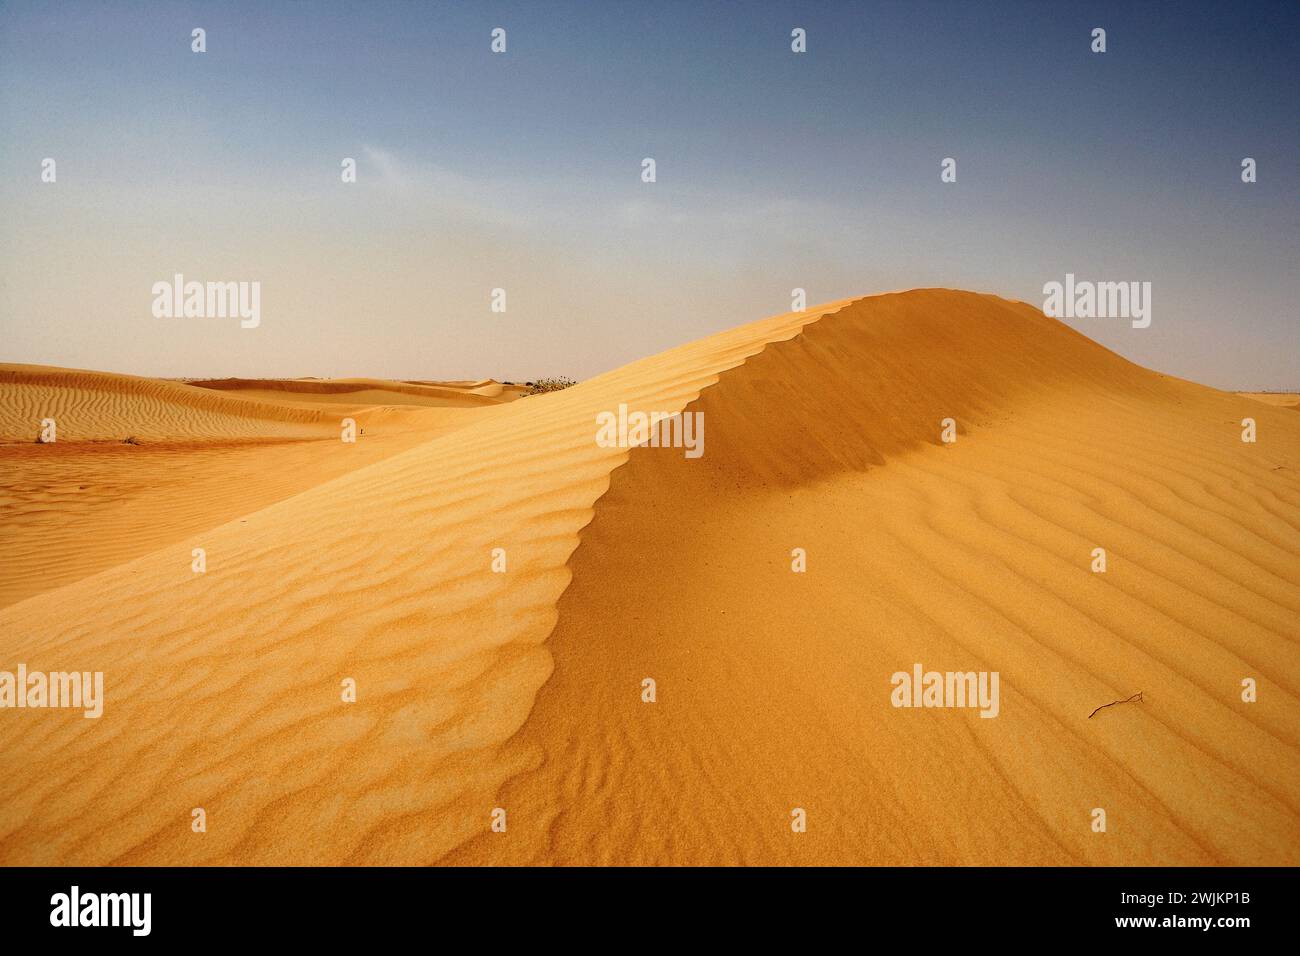 Crête de sable au moyen-Orient Banque D'Images